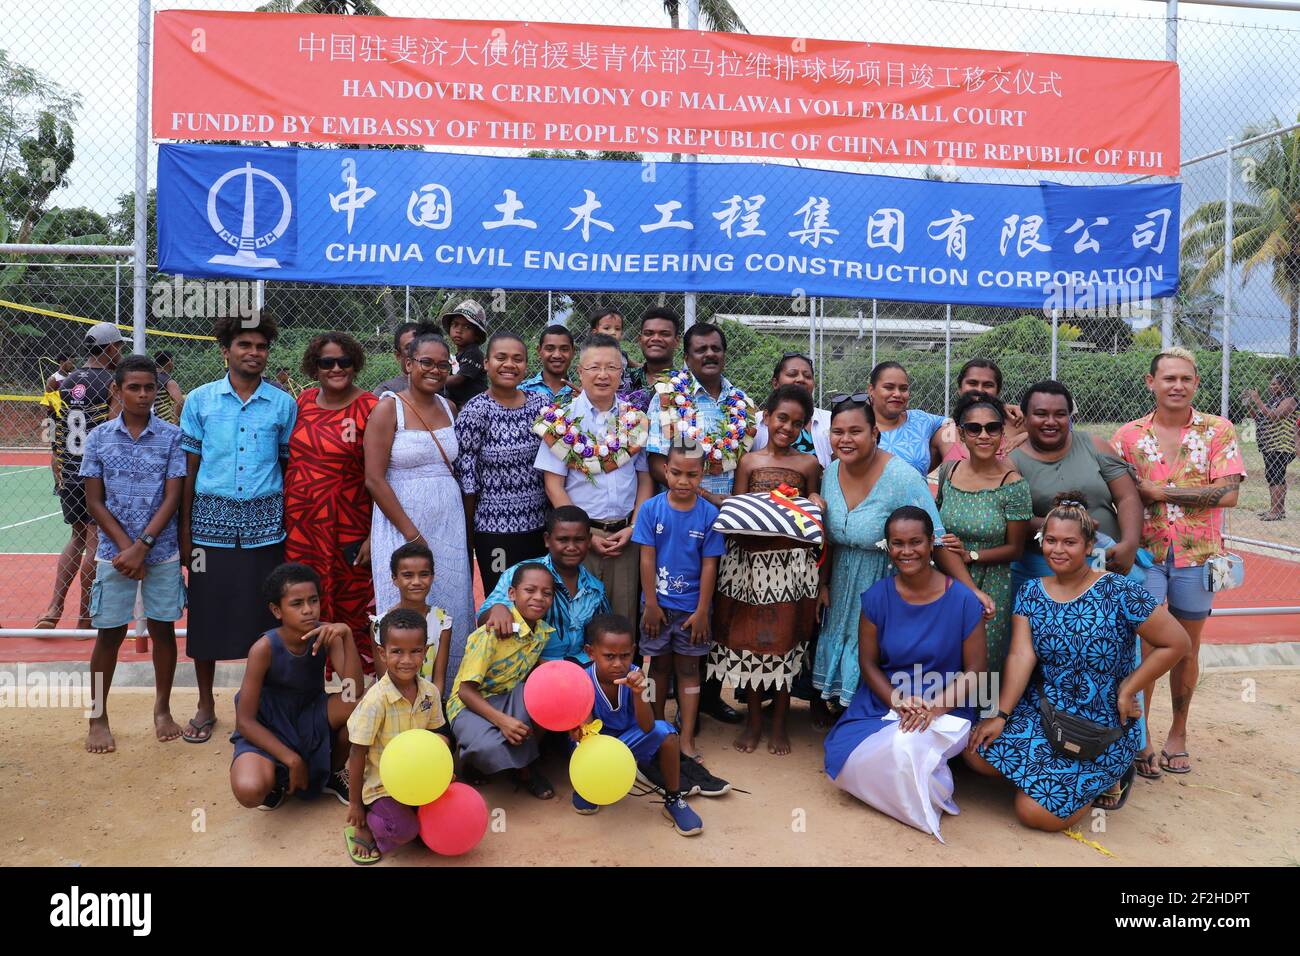 (210312) -- SUVA, 12. März 2021 (Xinhua) -- Chinesischer Botschafter in Fidschi Qian Bo (6th L, 2nd R) posiert für ein Gruppenfoto mit Fijis Minister für Jugend und Sport Parveen Kumar Bala (7th L, 2nd R) Und Anwohner bei der Übergabe eines China-Aid-Volleyballplatzes in der Malawai-Gemeinde in Nadi, Fidschi, 12. März 2021. Am Freitag wurde Fidschi in Nadi, der drittgrößten Stadt Fijis, ein Volleyballfeld übergeben, auf dem Beamte aus China und Fidschi die Sportanlage zum Wohle der lokalen Bevölkerung behuldigten. (Chinesische Botschaft in Fidschi/Handout über Xinhua) Stockfoto